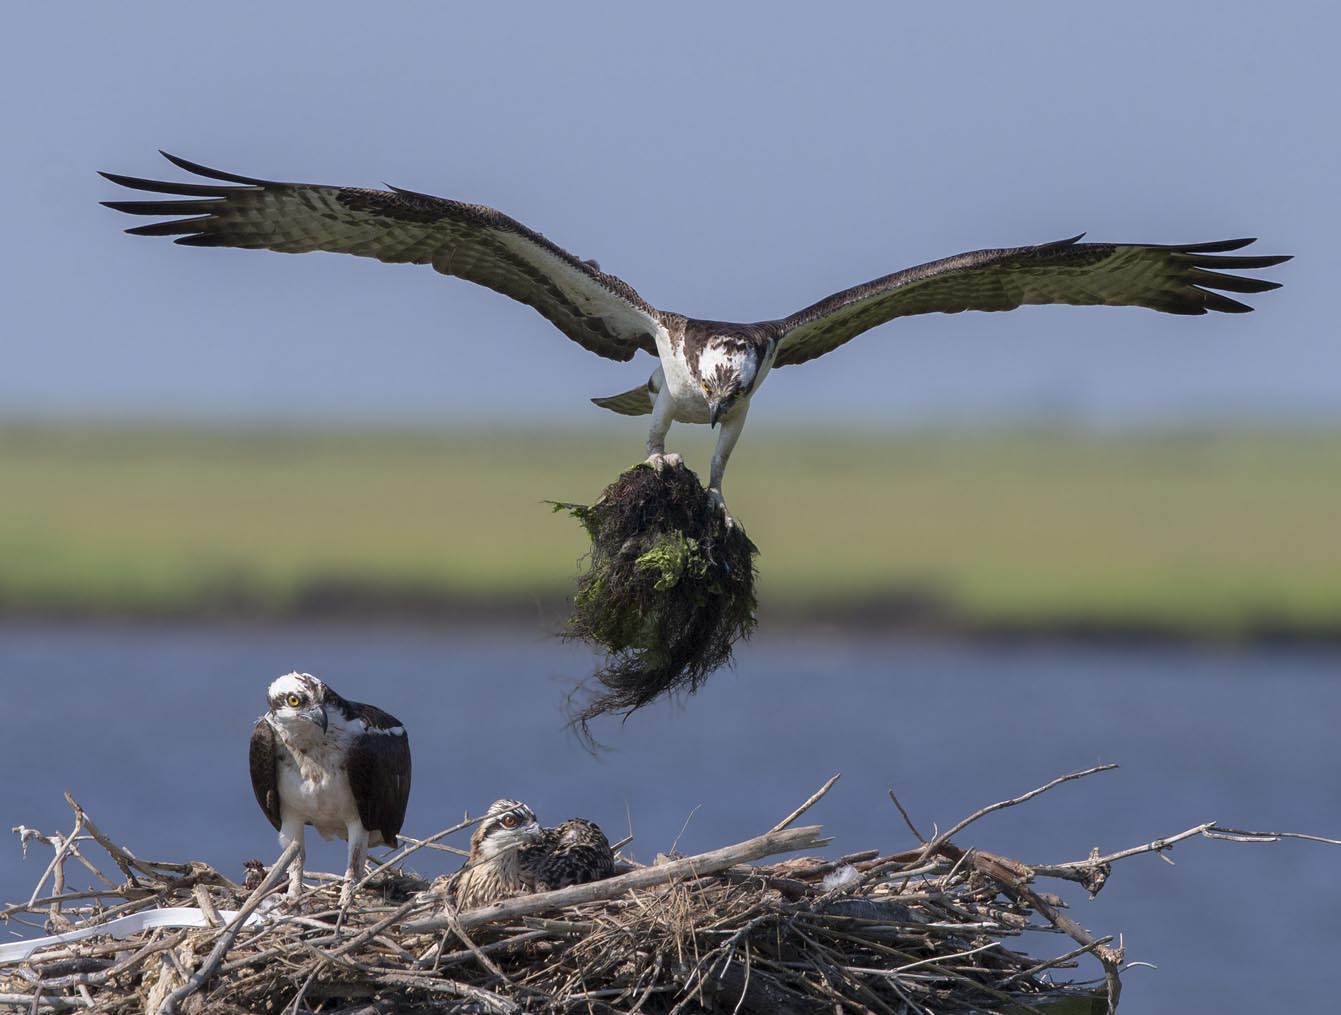 Osprey w nest material 8458s